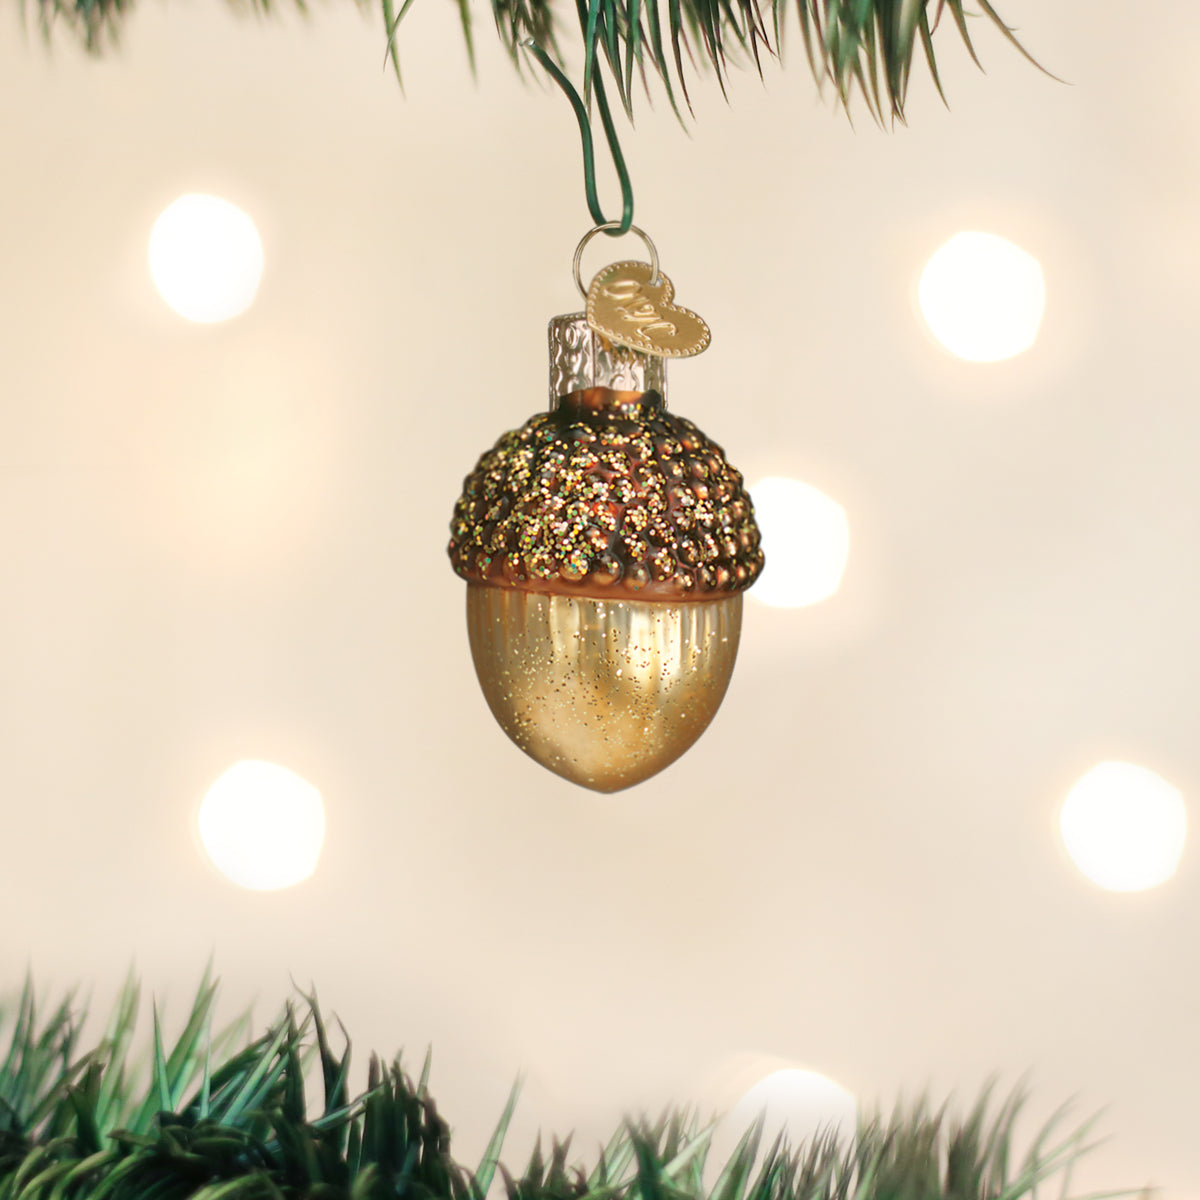 Small Acorn Ornament